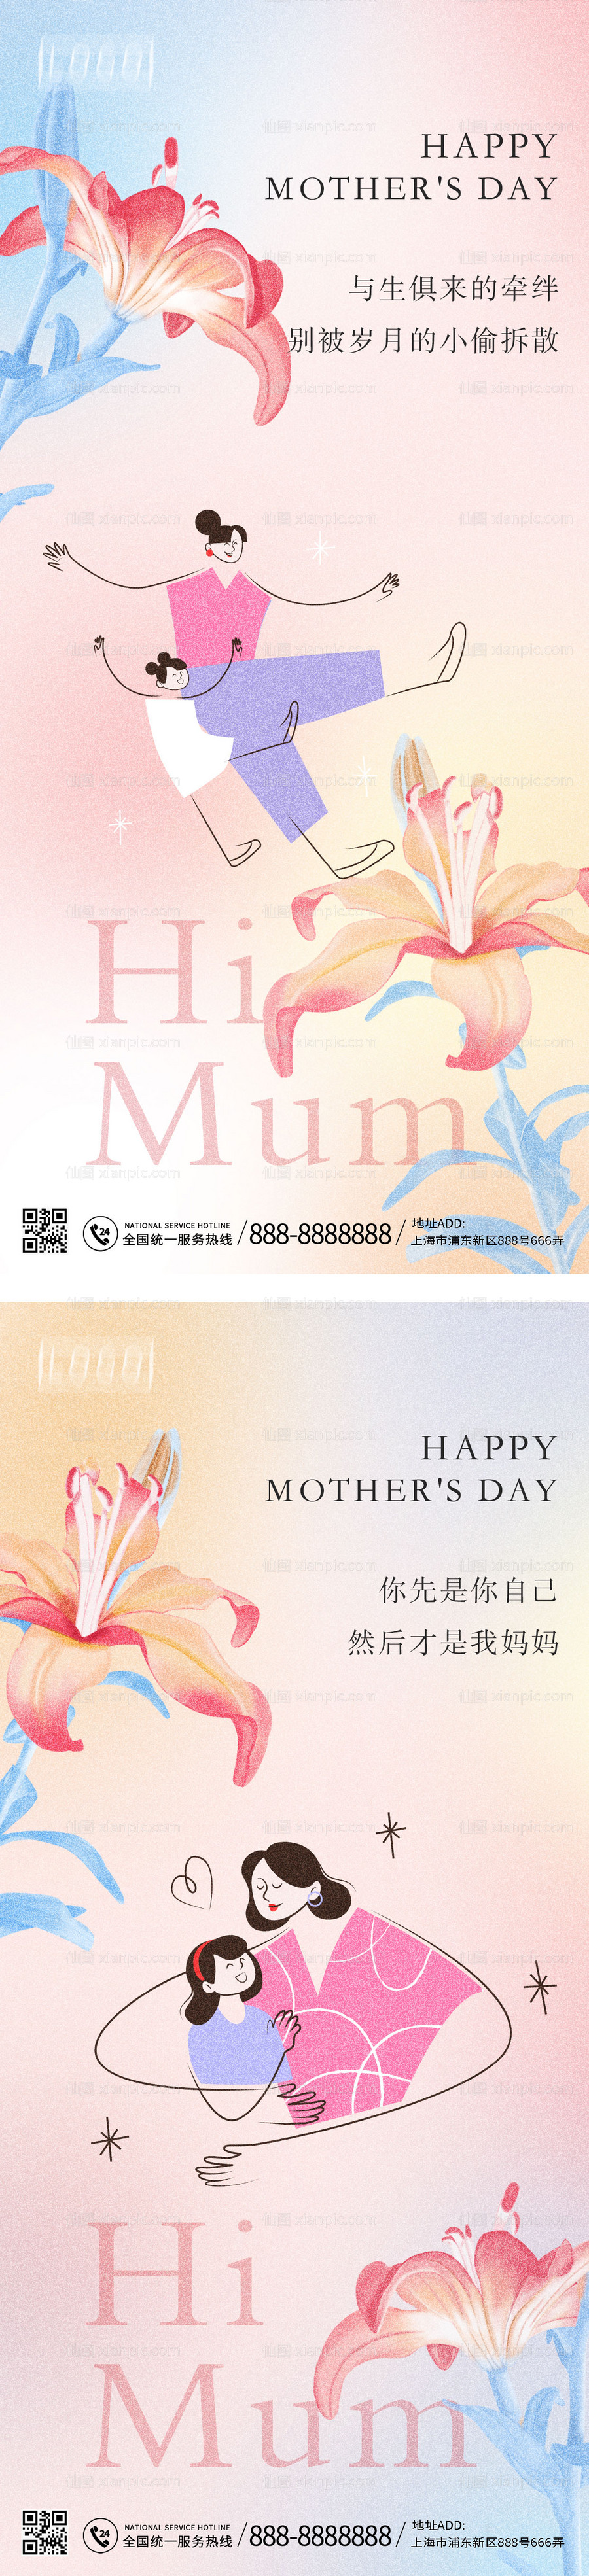 素材乐-母亲节简约系列海报